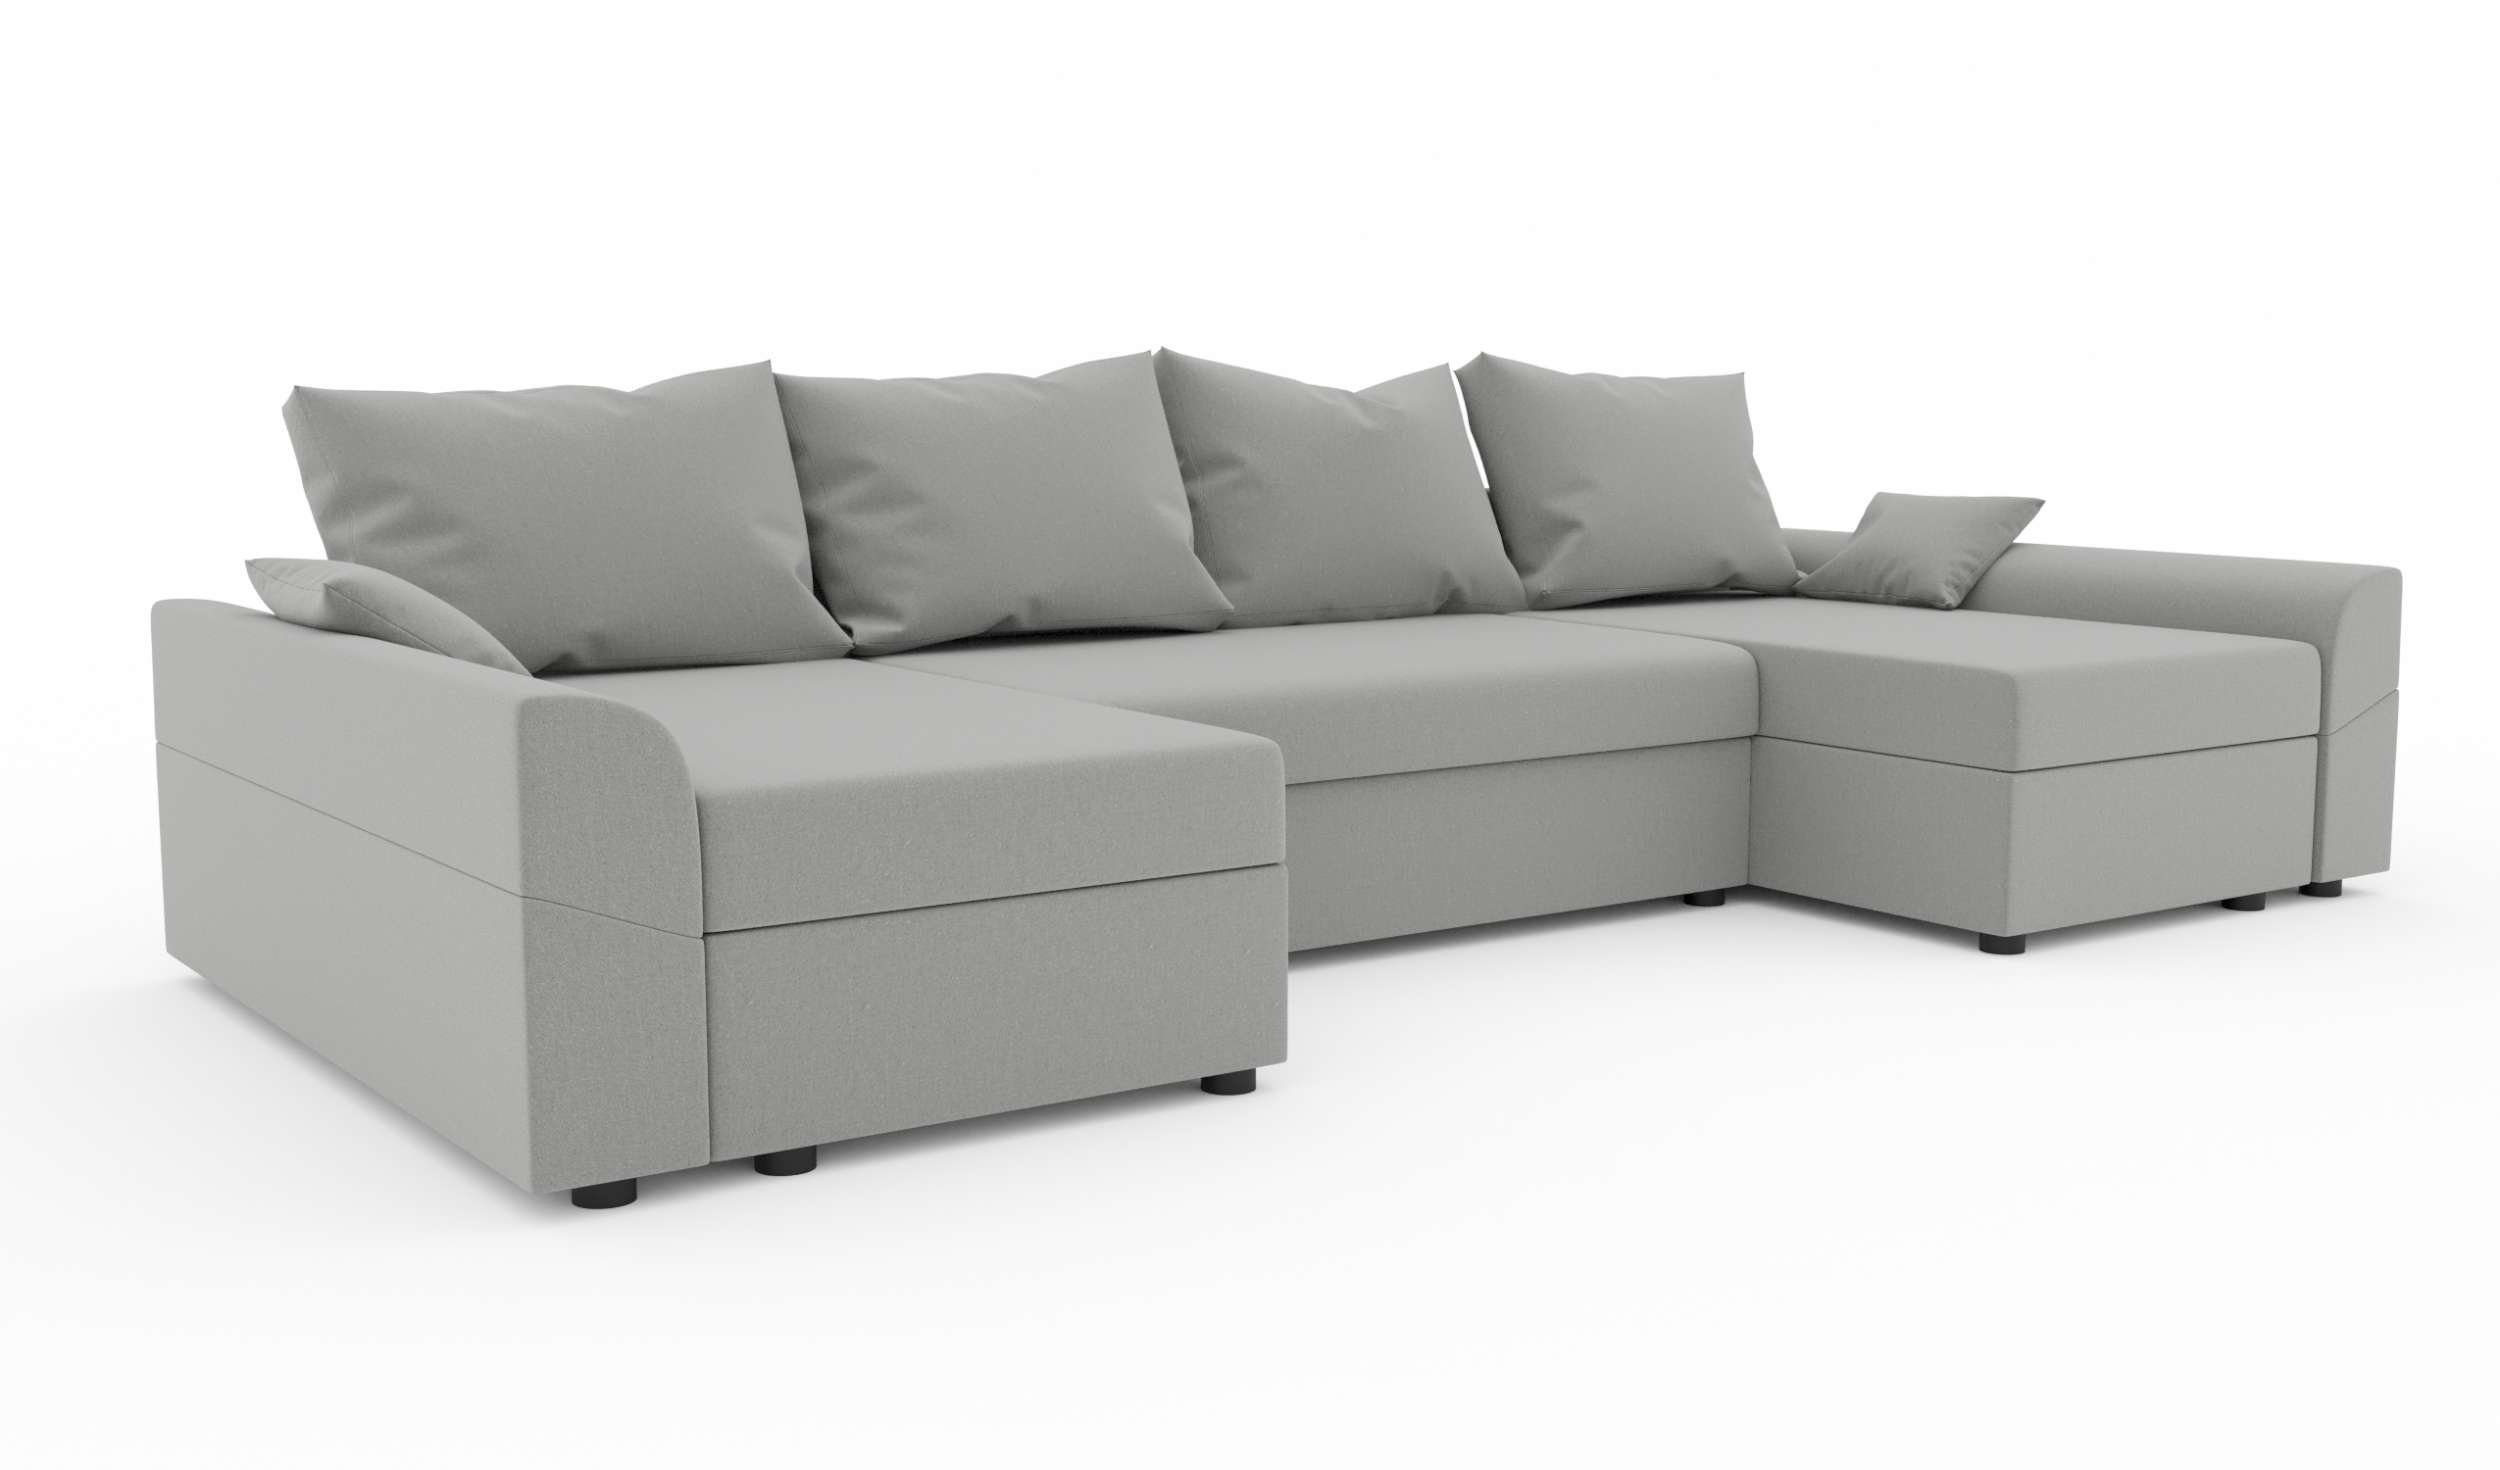 Stylefy Wohnlandschaft Sitzkomfort, Design Modern Sofa, Carolina, Eckcouch, mit Bettfunktion, U-Form, Bettkasten, mit